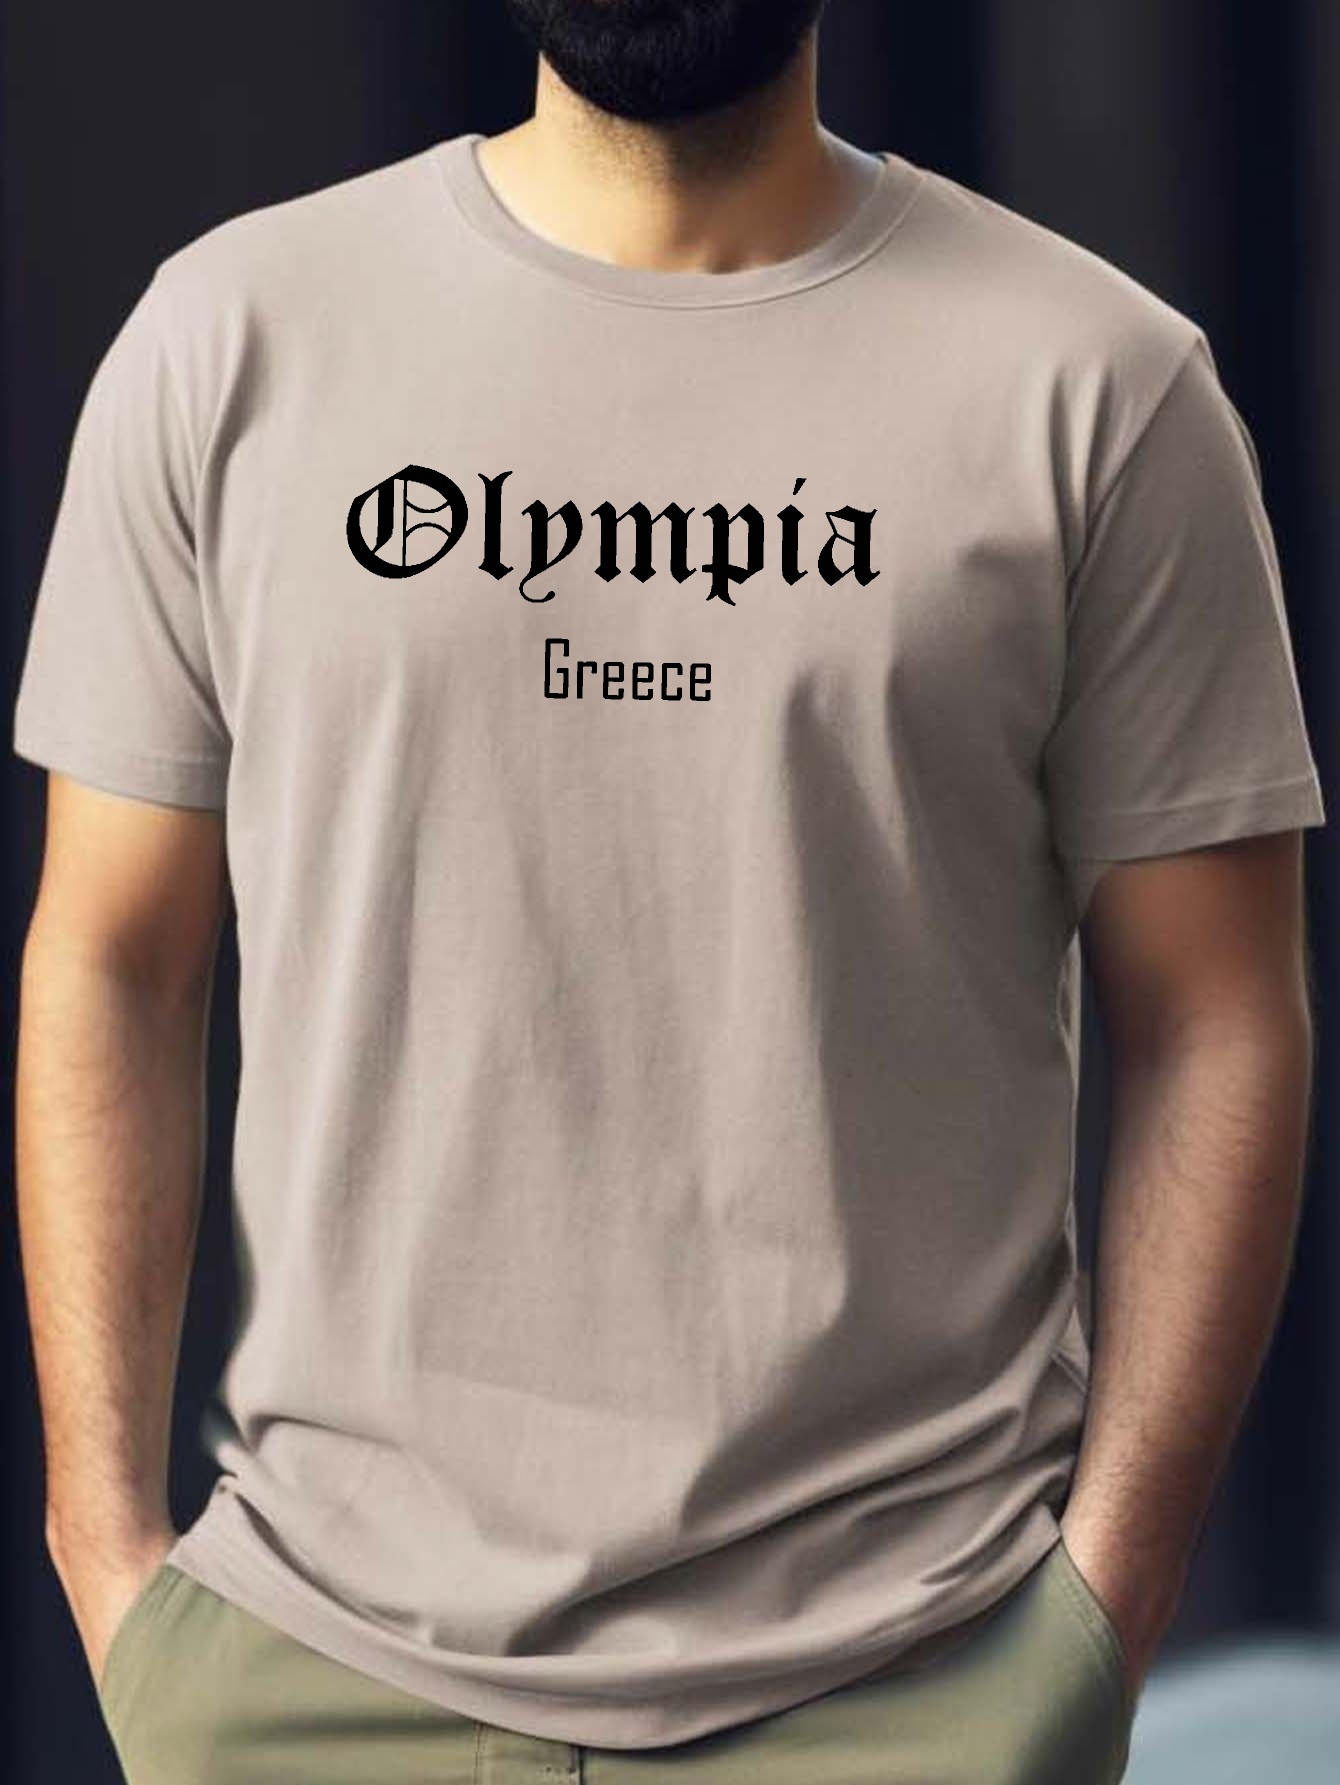 Greek City Olympia Print Tee Shirt Tees Men Casual Short - Temu